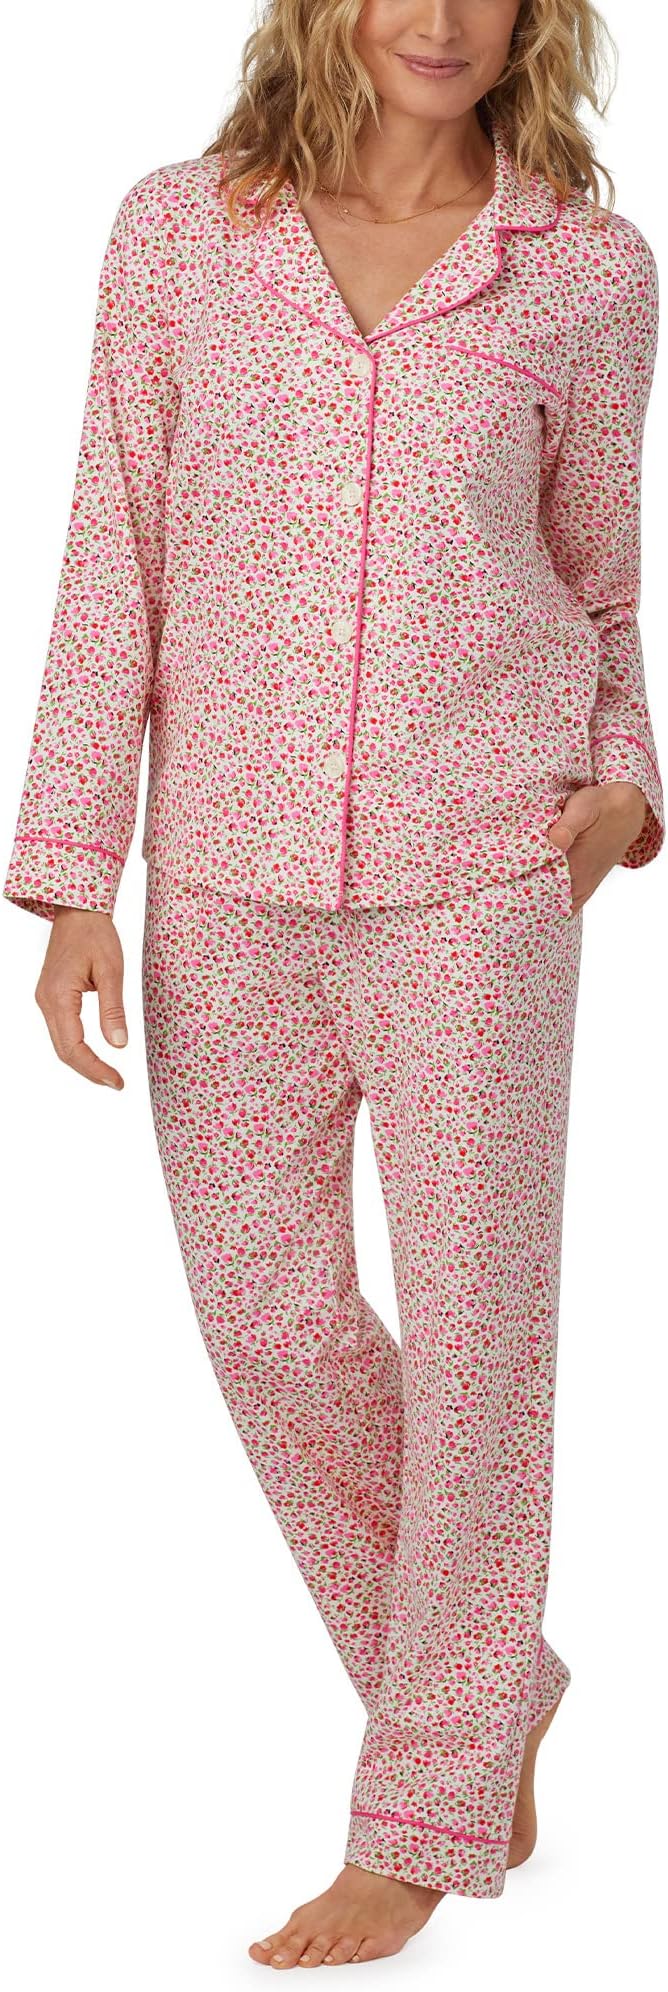 Классический пижамный комплект с длинными рукавами Bedhead PJs, цвет Lynn bracht mary lynn white chrysanthemum